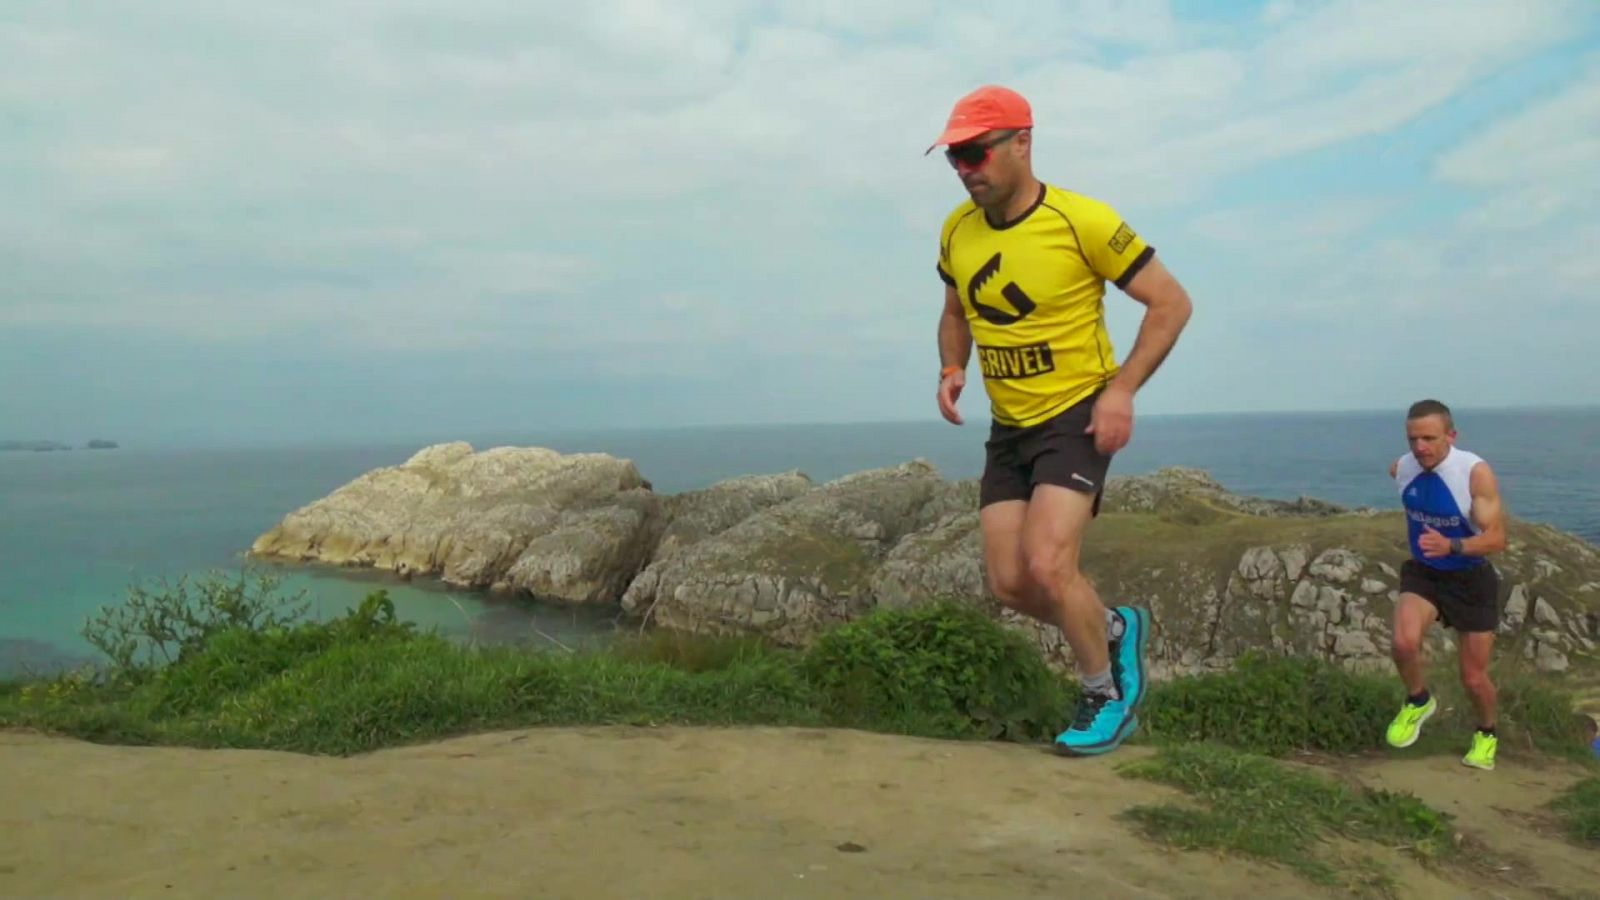 Atletismo - Campeonato de España carreras de montaña. Trail Running